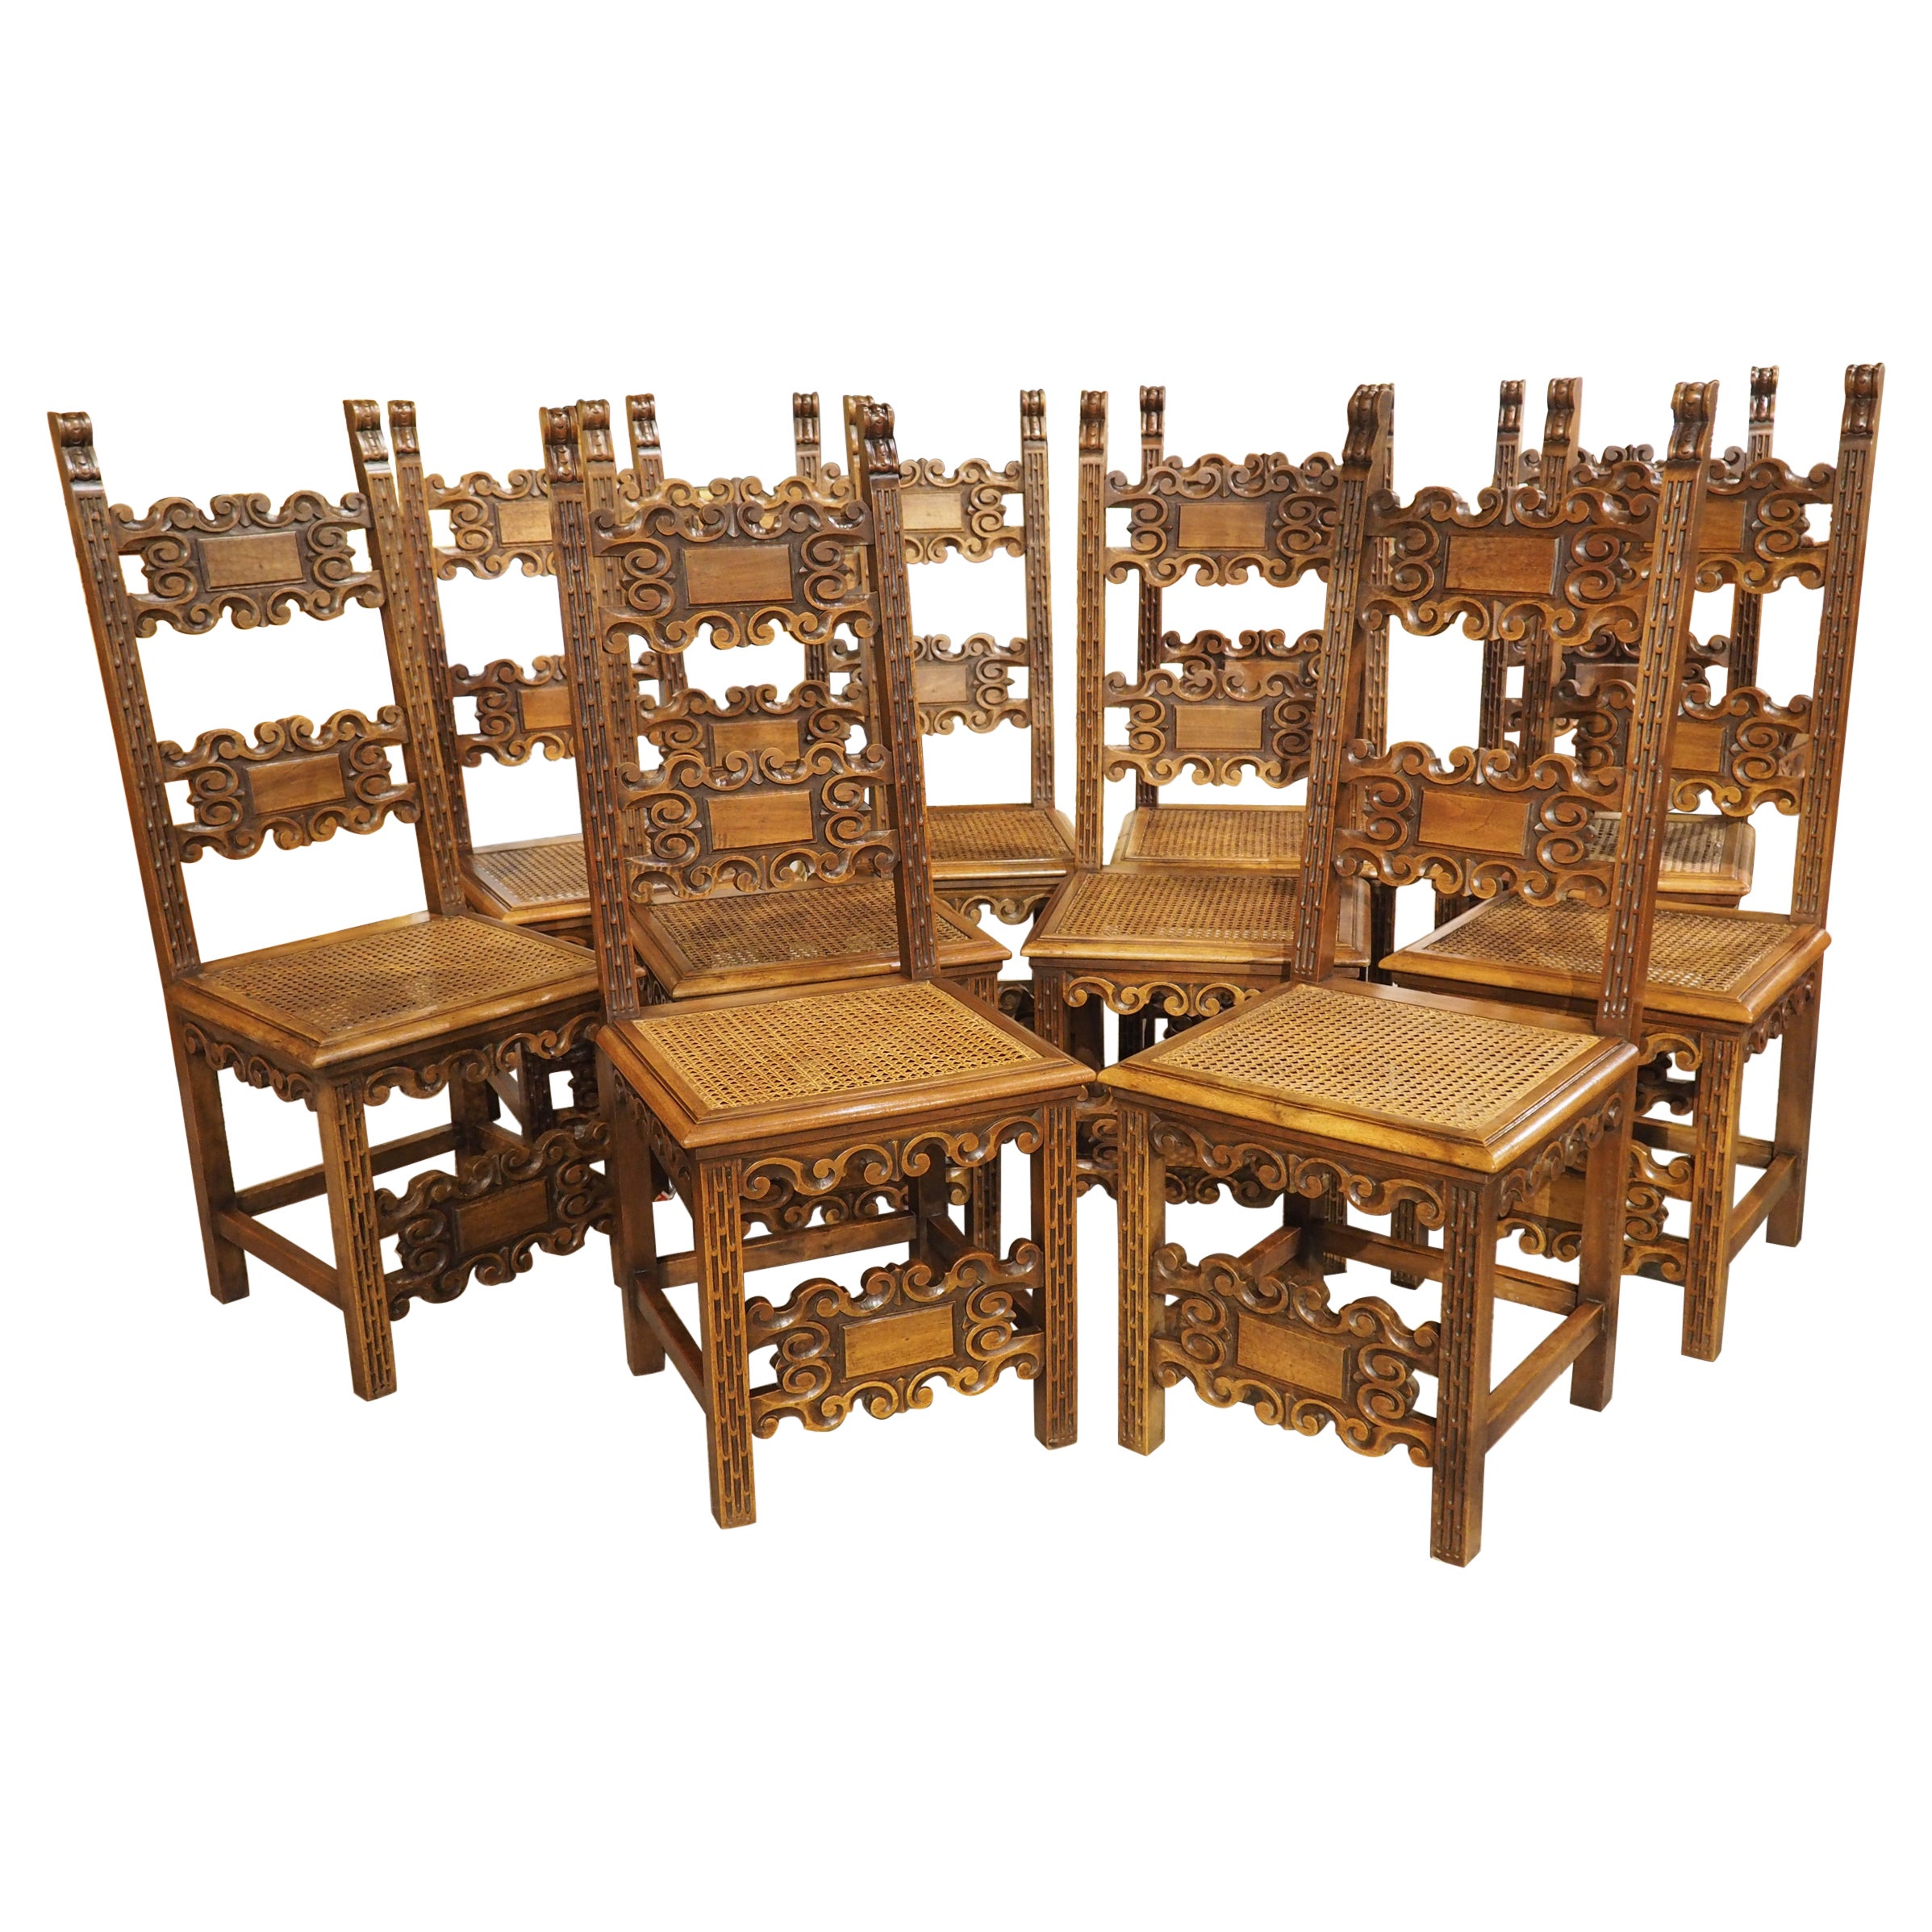 Ensemble de 10 chaises de salle à manger italiennes anciennes en noyer sculpté et cannage, vers 1880